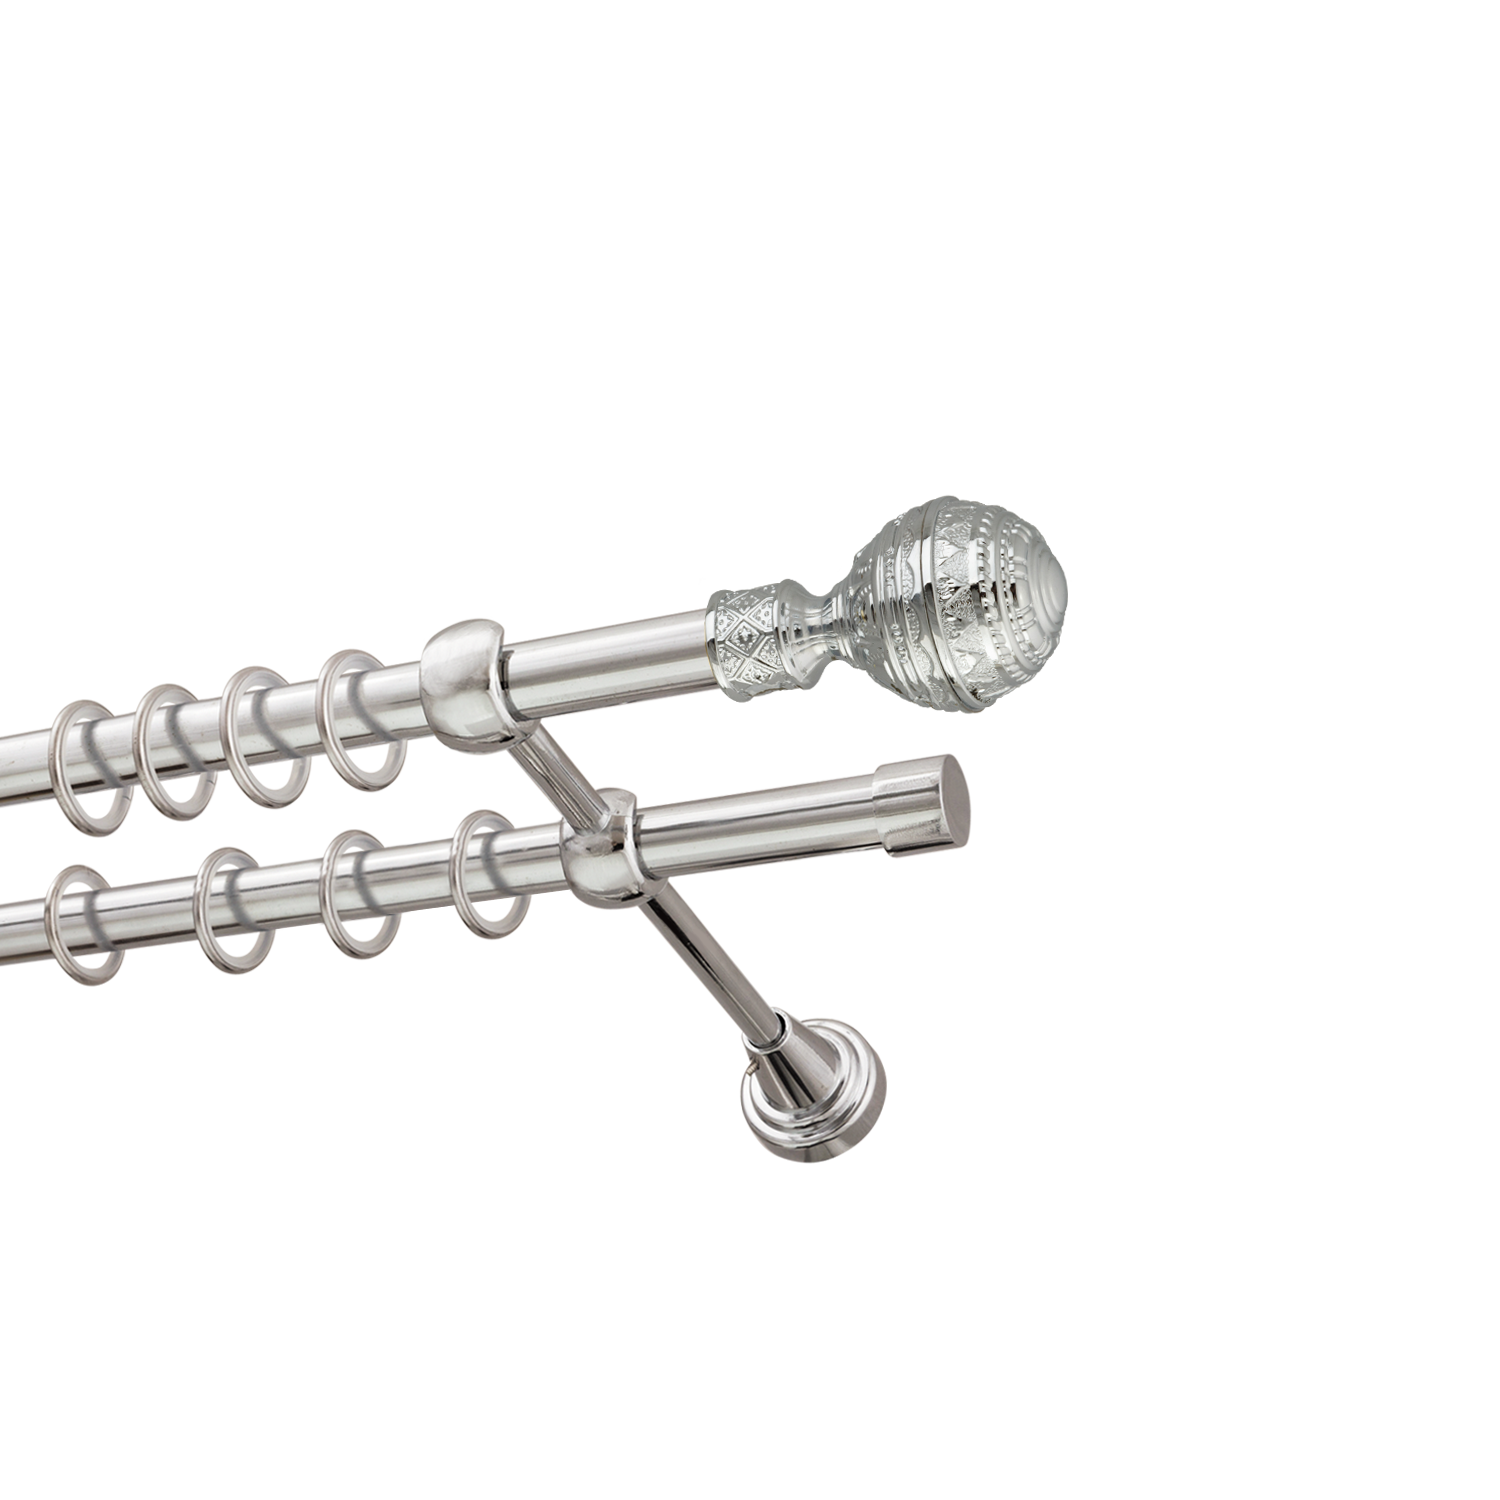 Металлический карниз для штор Роял, двухрядный 16/16 мм, серебро, гладкая штанга, длина 300 см - фото Wikidecor.ru